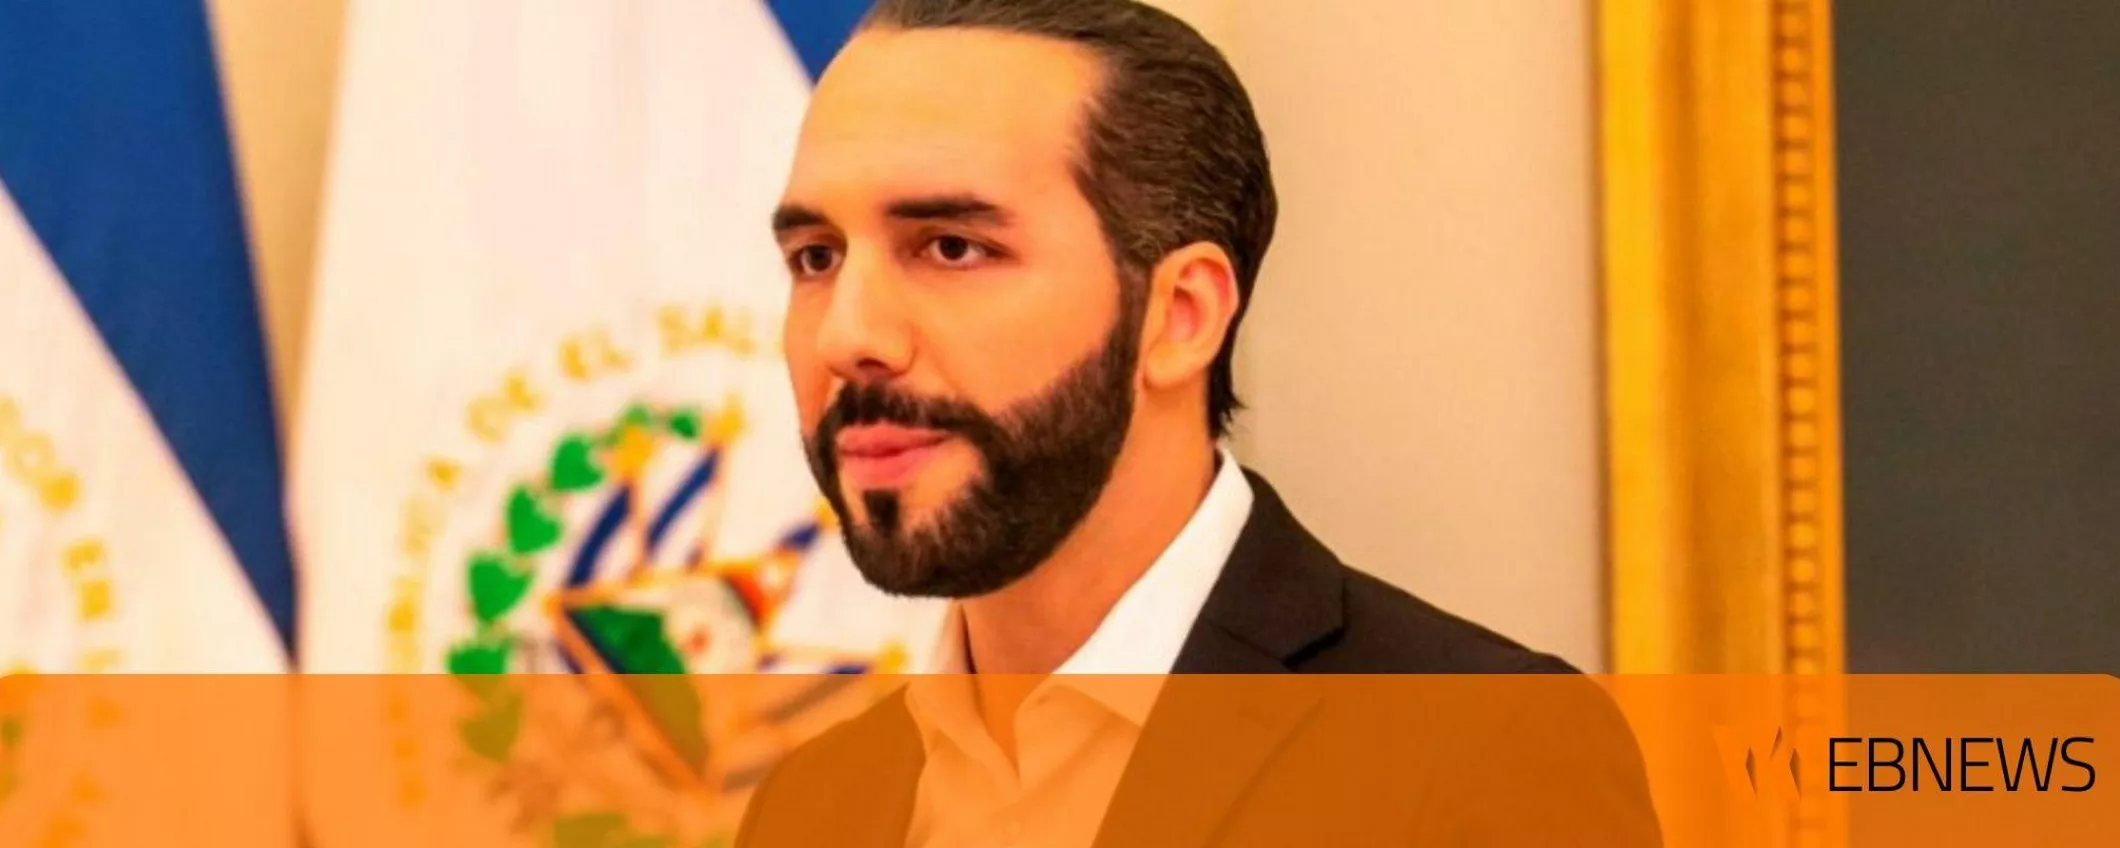 El Salvador lancia un sito web dove verificare in tempo reale le sue riserve di Bitcoin